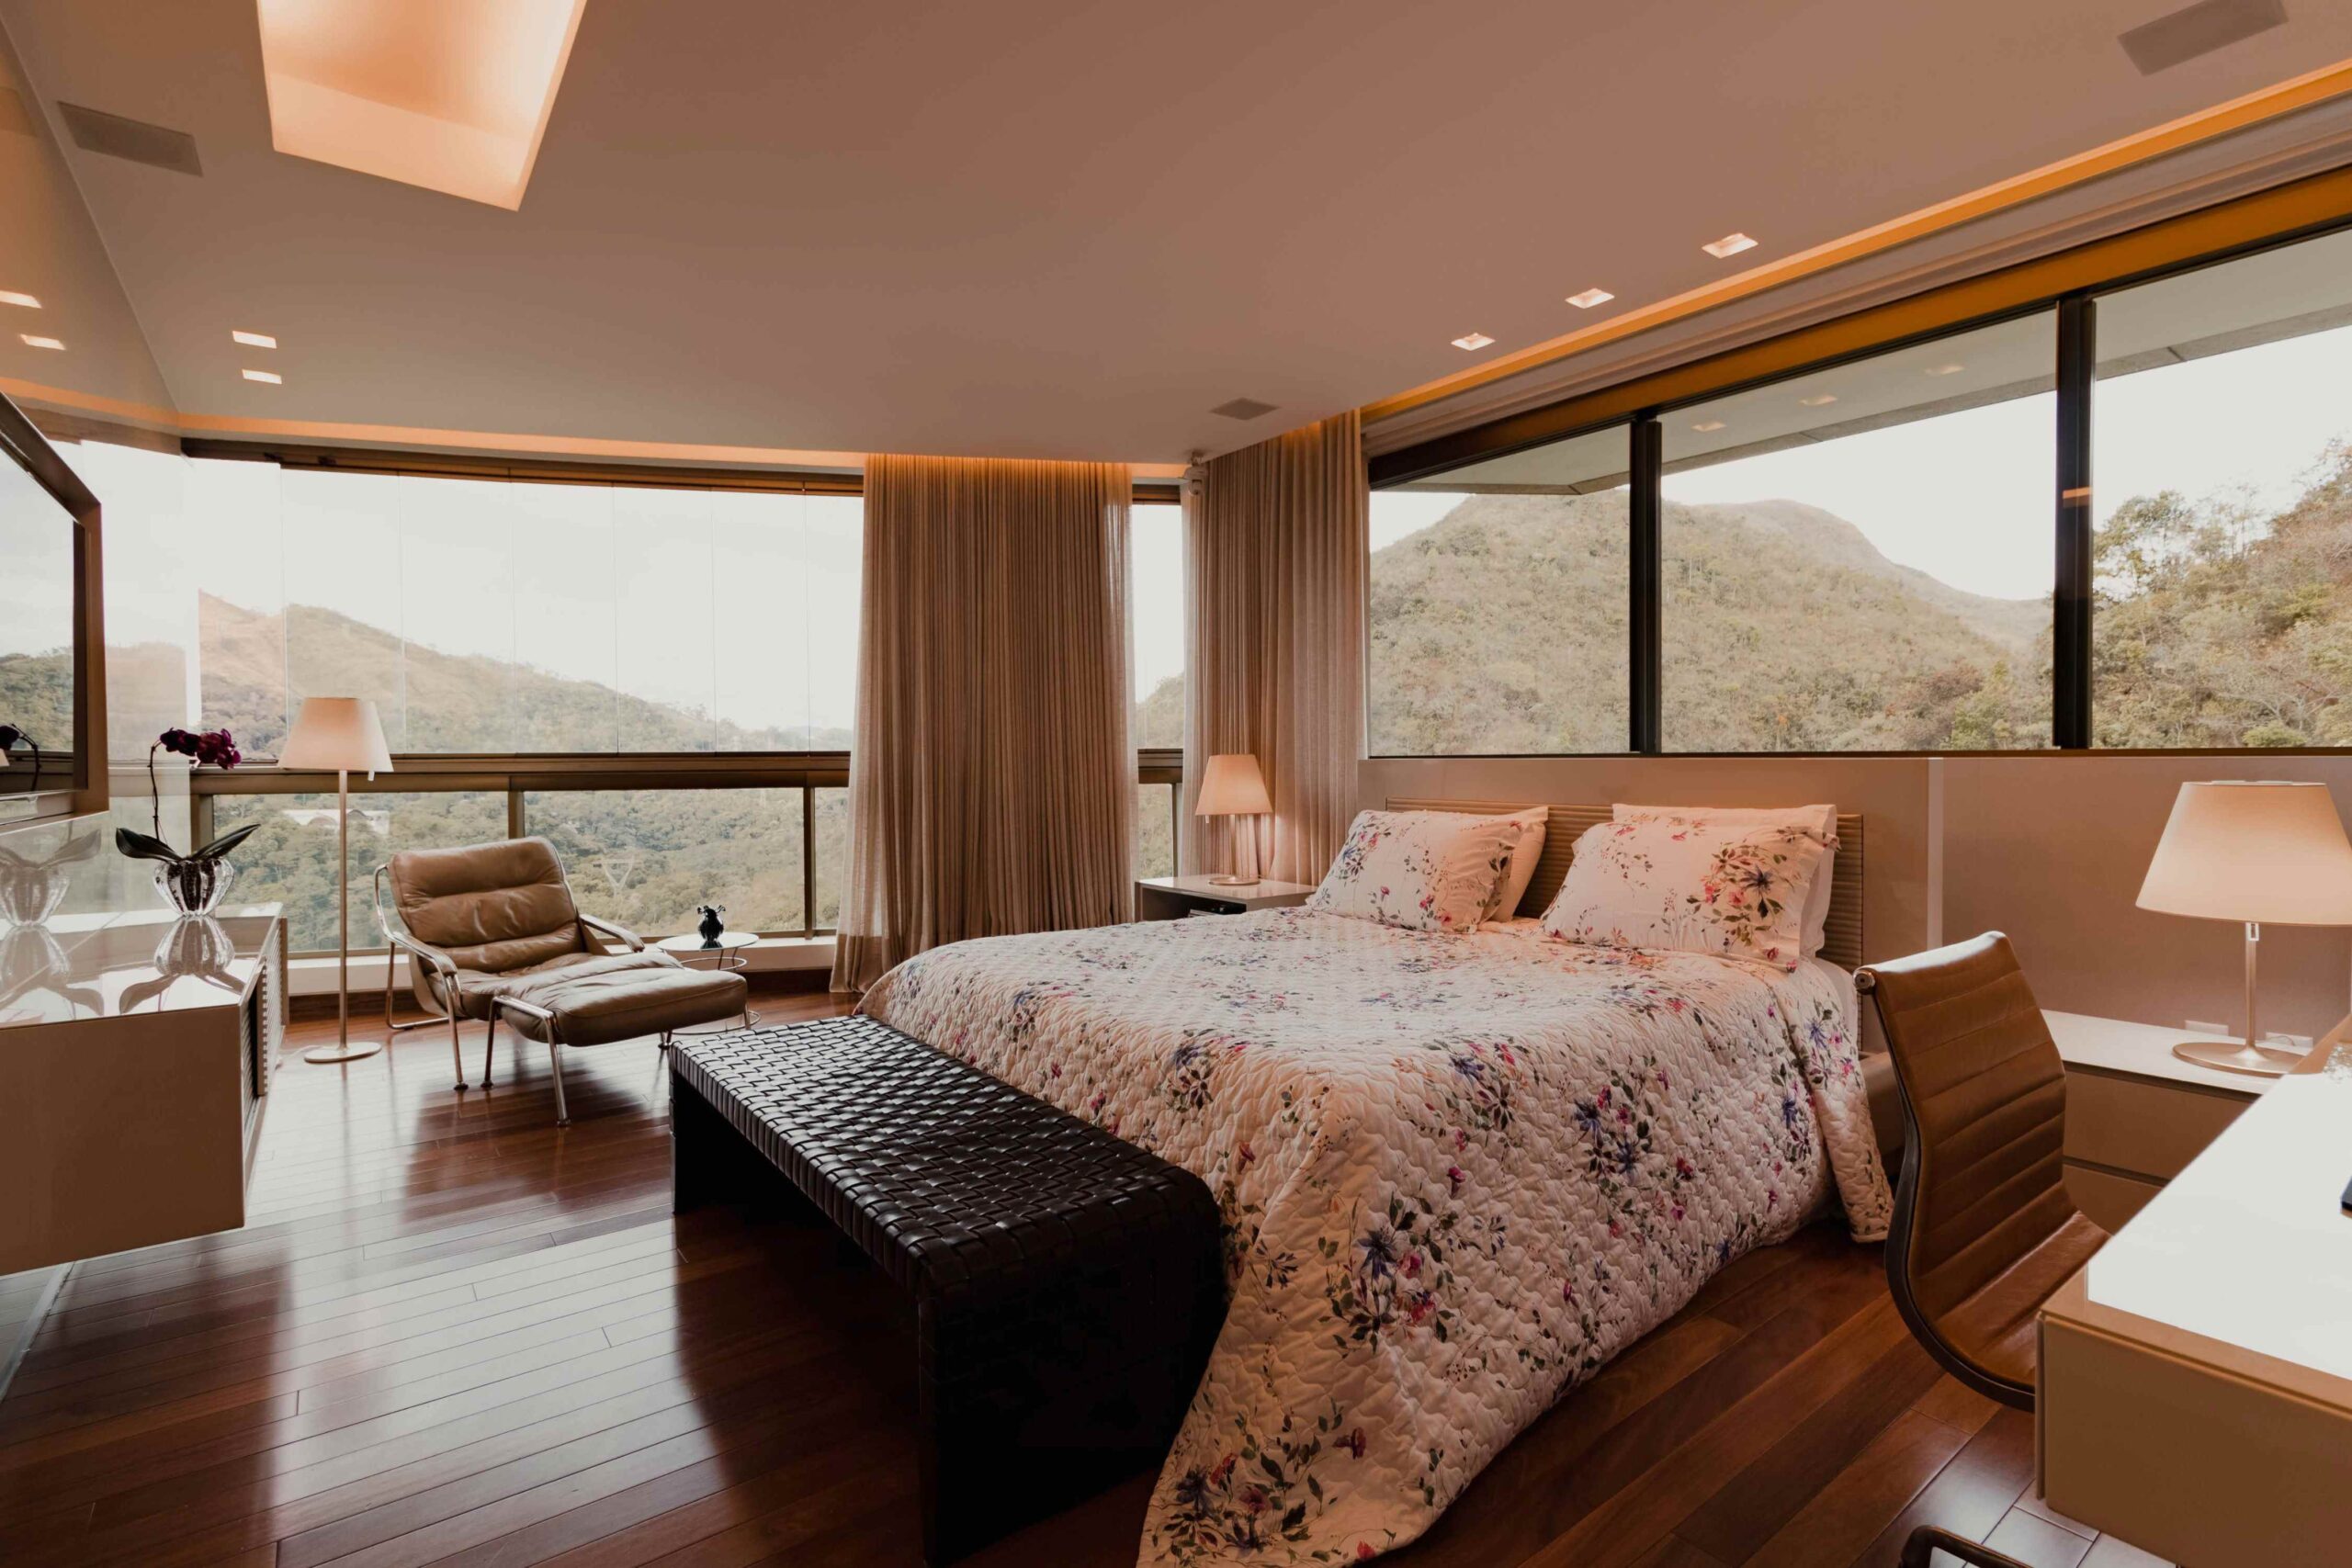 5 Star hotel bedroom interior design